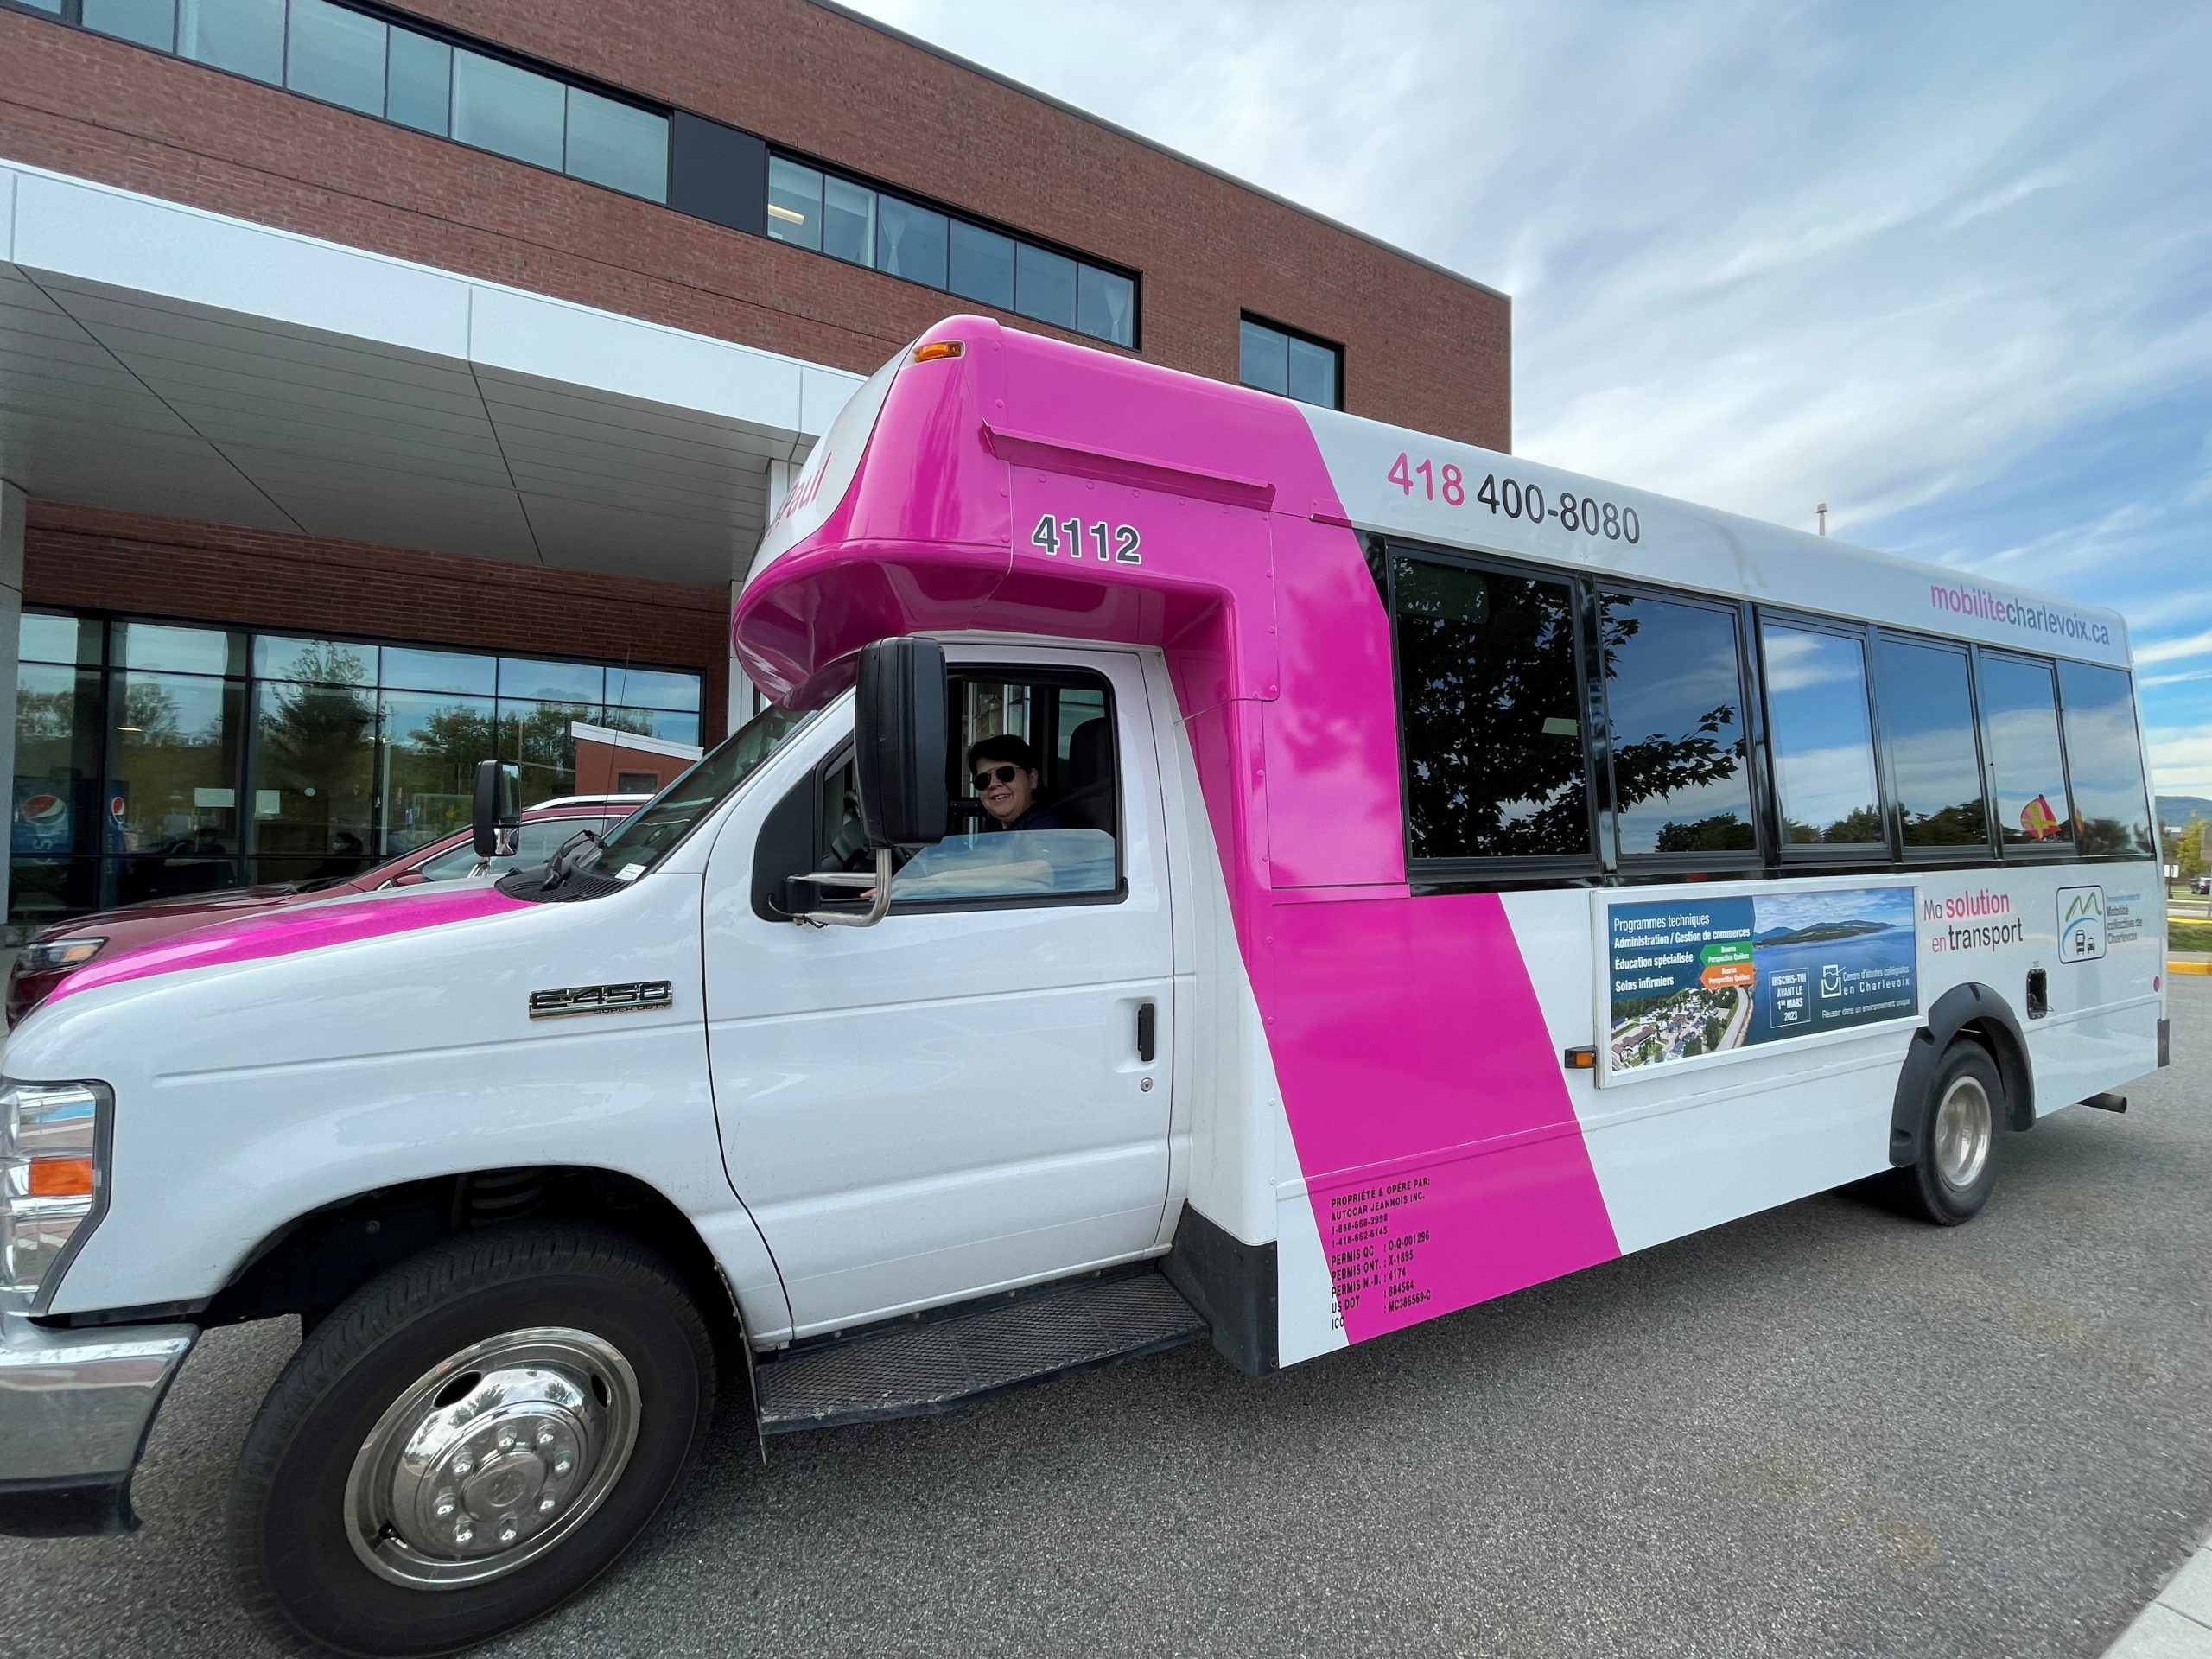 La flotte de véhicules de la Corporation de mobilité collective inclut des petits autobus de ce type pour ses services intra urbains et interurbains.